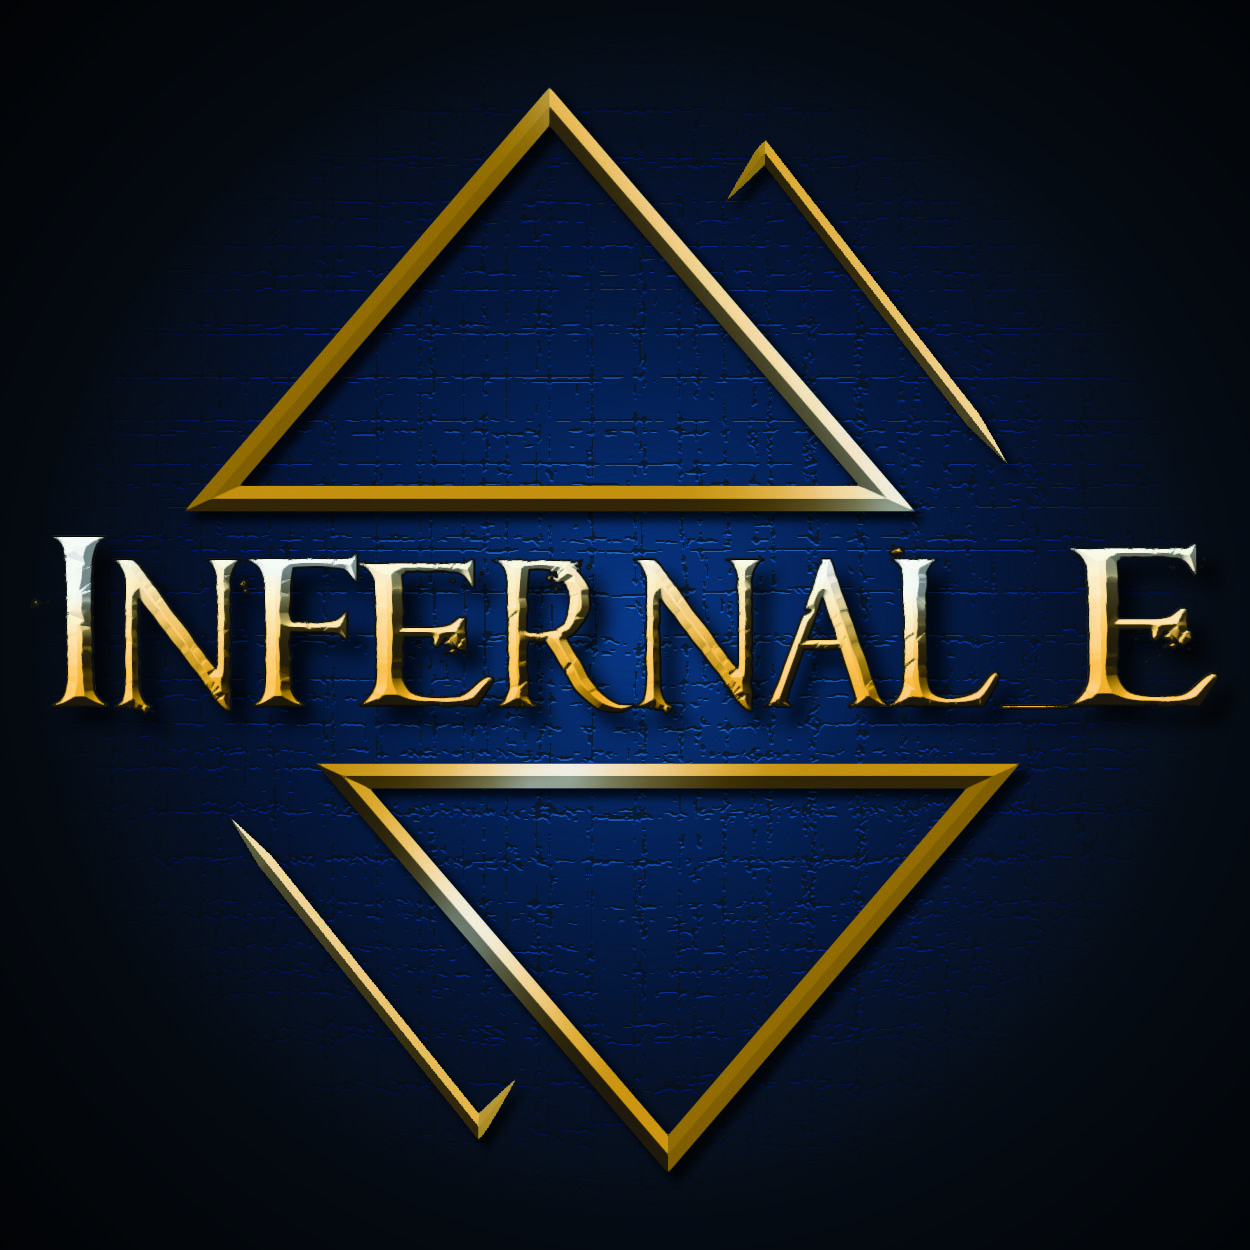 Infernal_E Logo - Adobe Illustrator